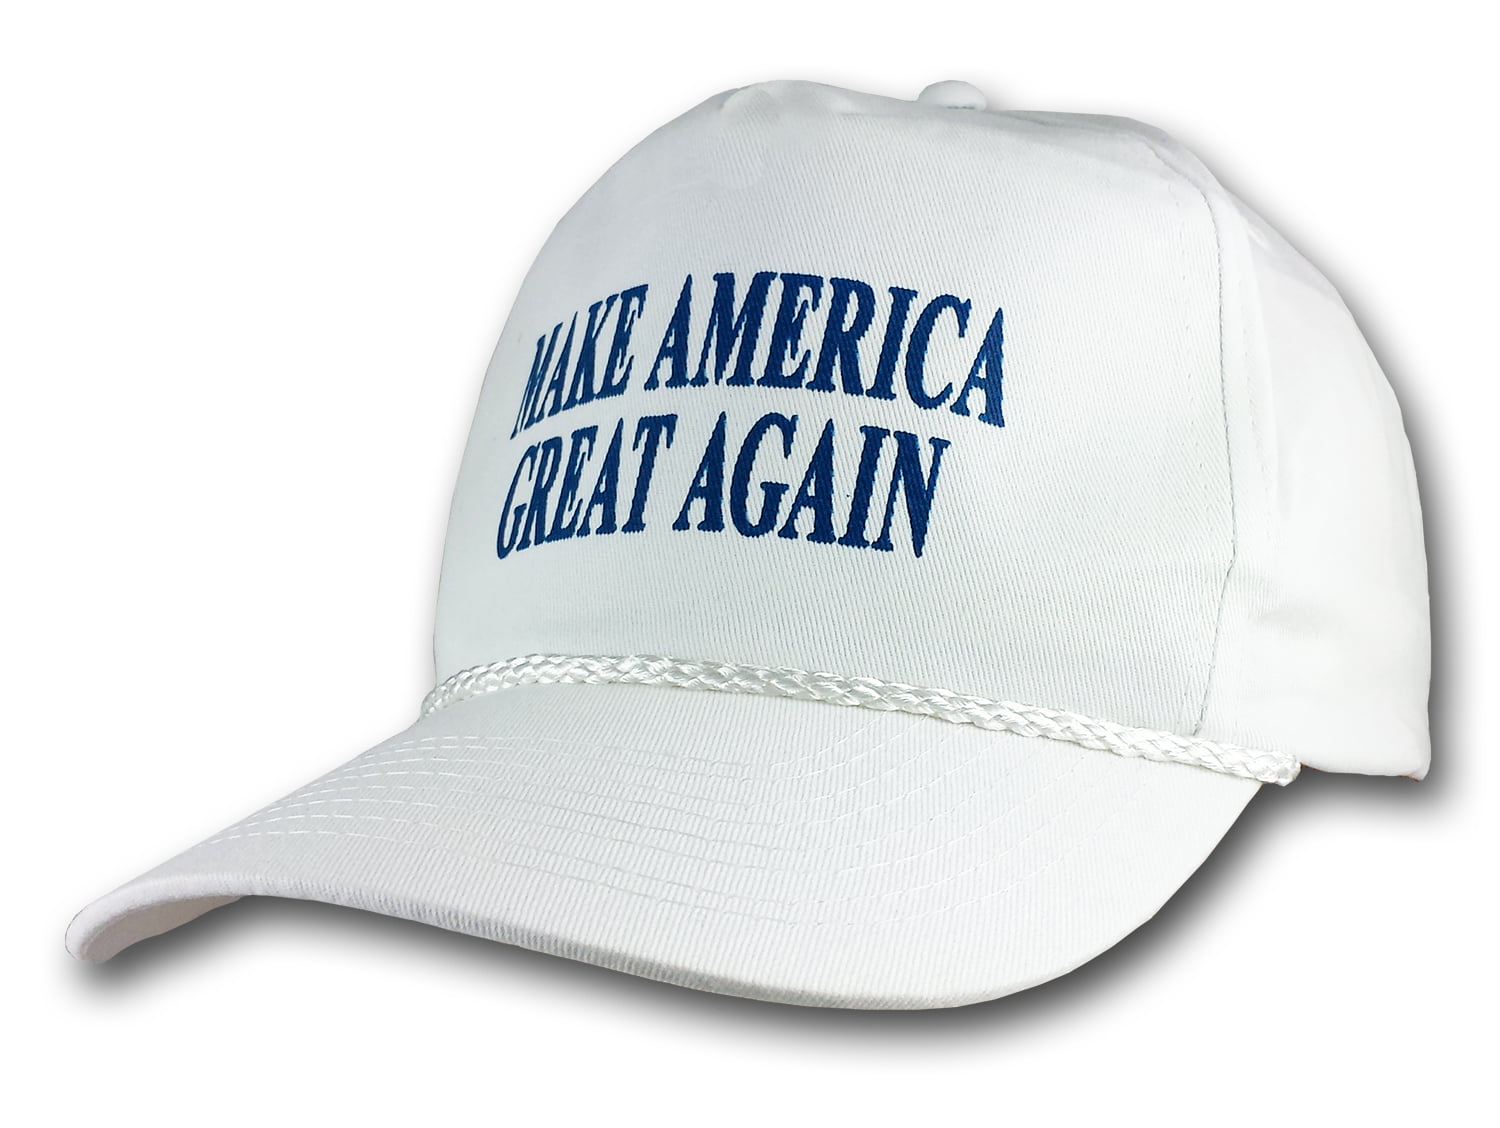 Make America Great Again Hat Donald Trump 2018 Republican Adjustable Mesh Cap BW